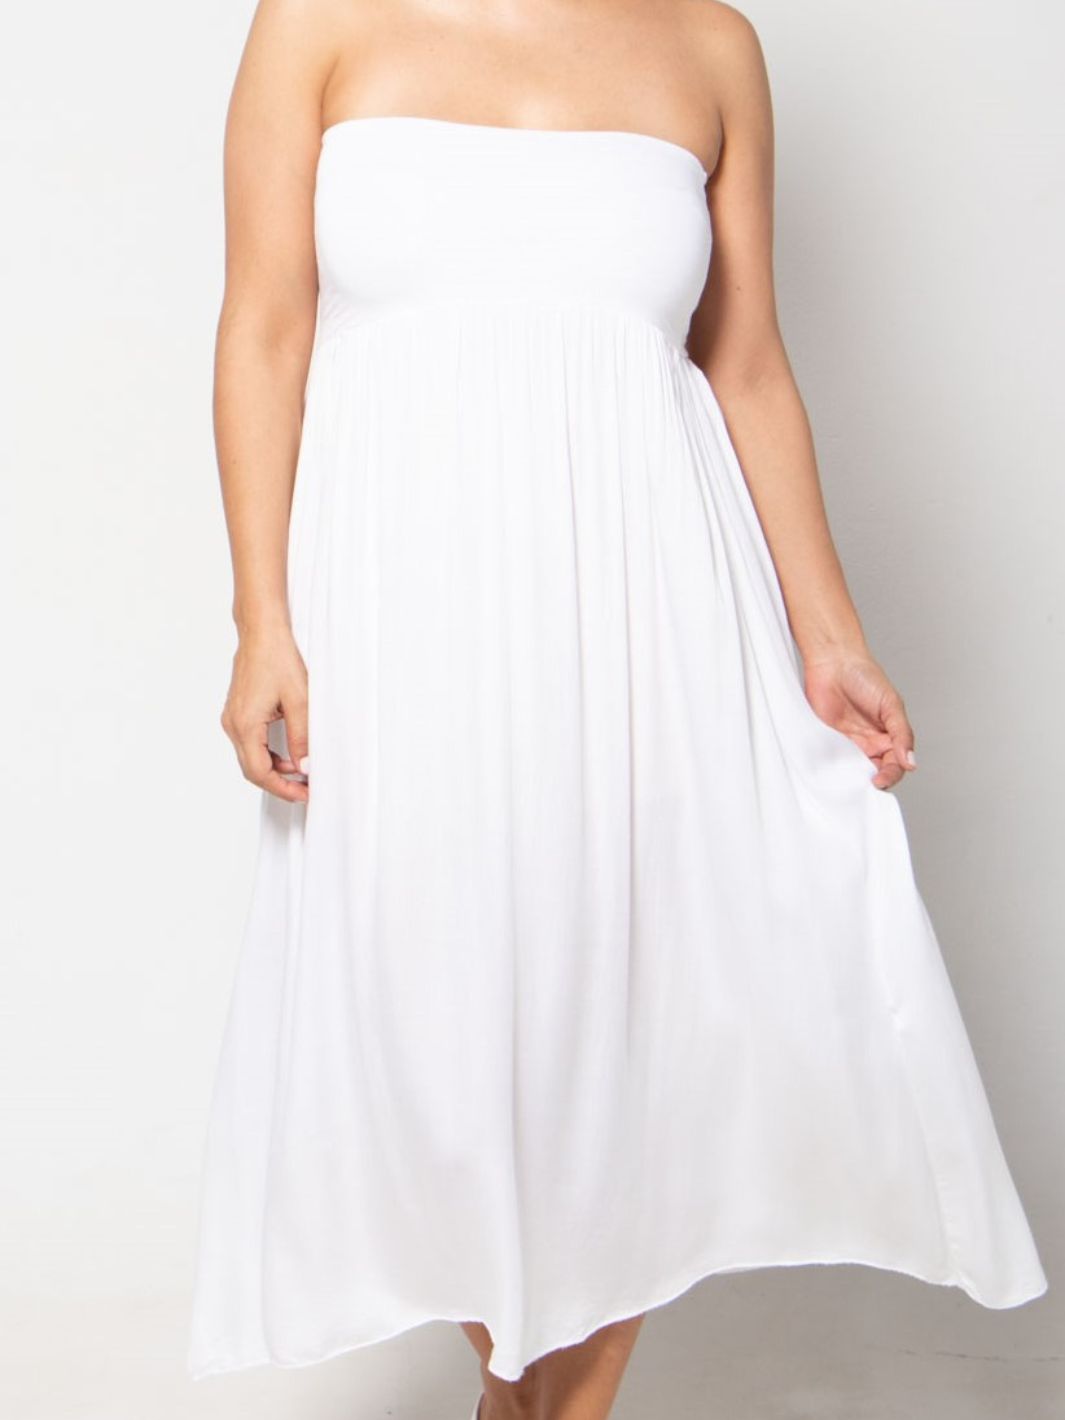 Sleeveless Skirt Dress - White